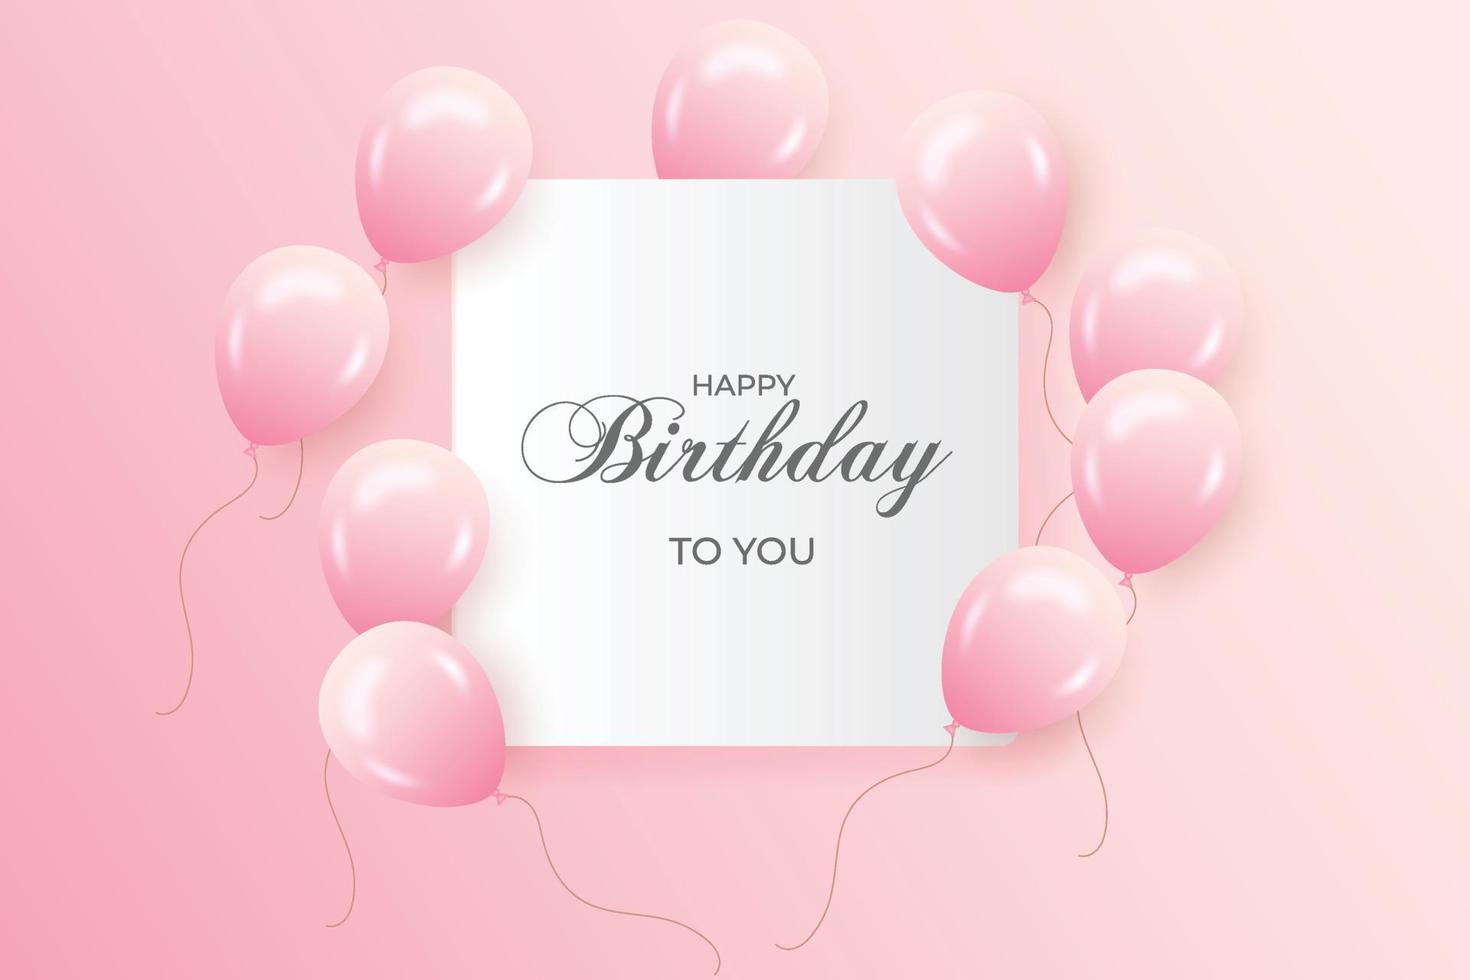 födelsedagsönskemål med realistiska rosa ballonger set och rosa bakgrund vektor